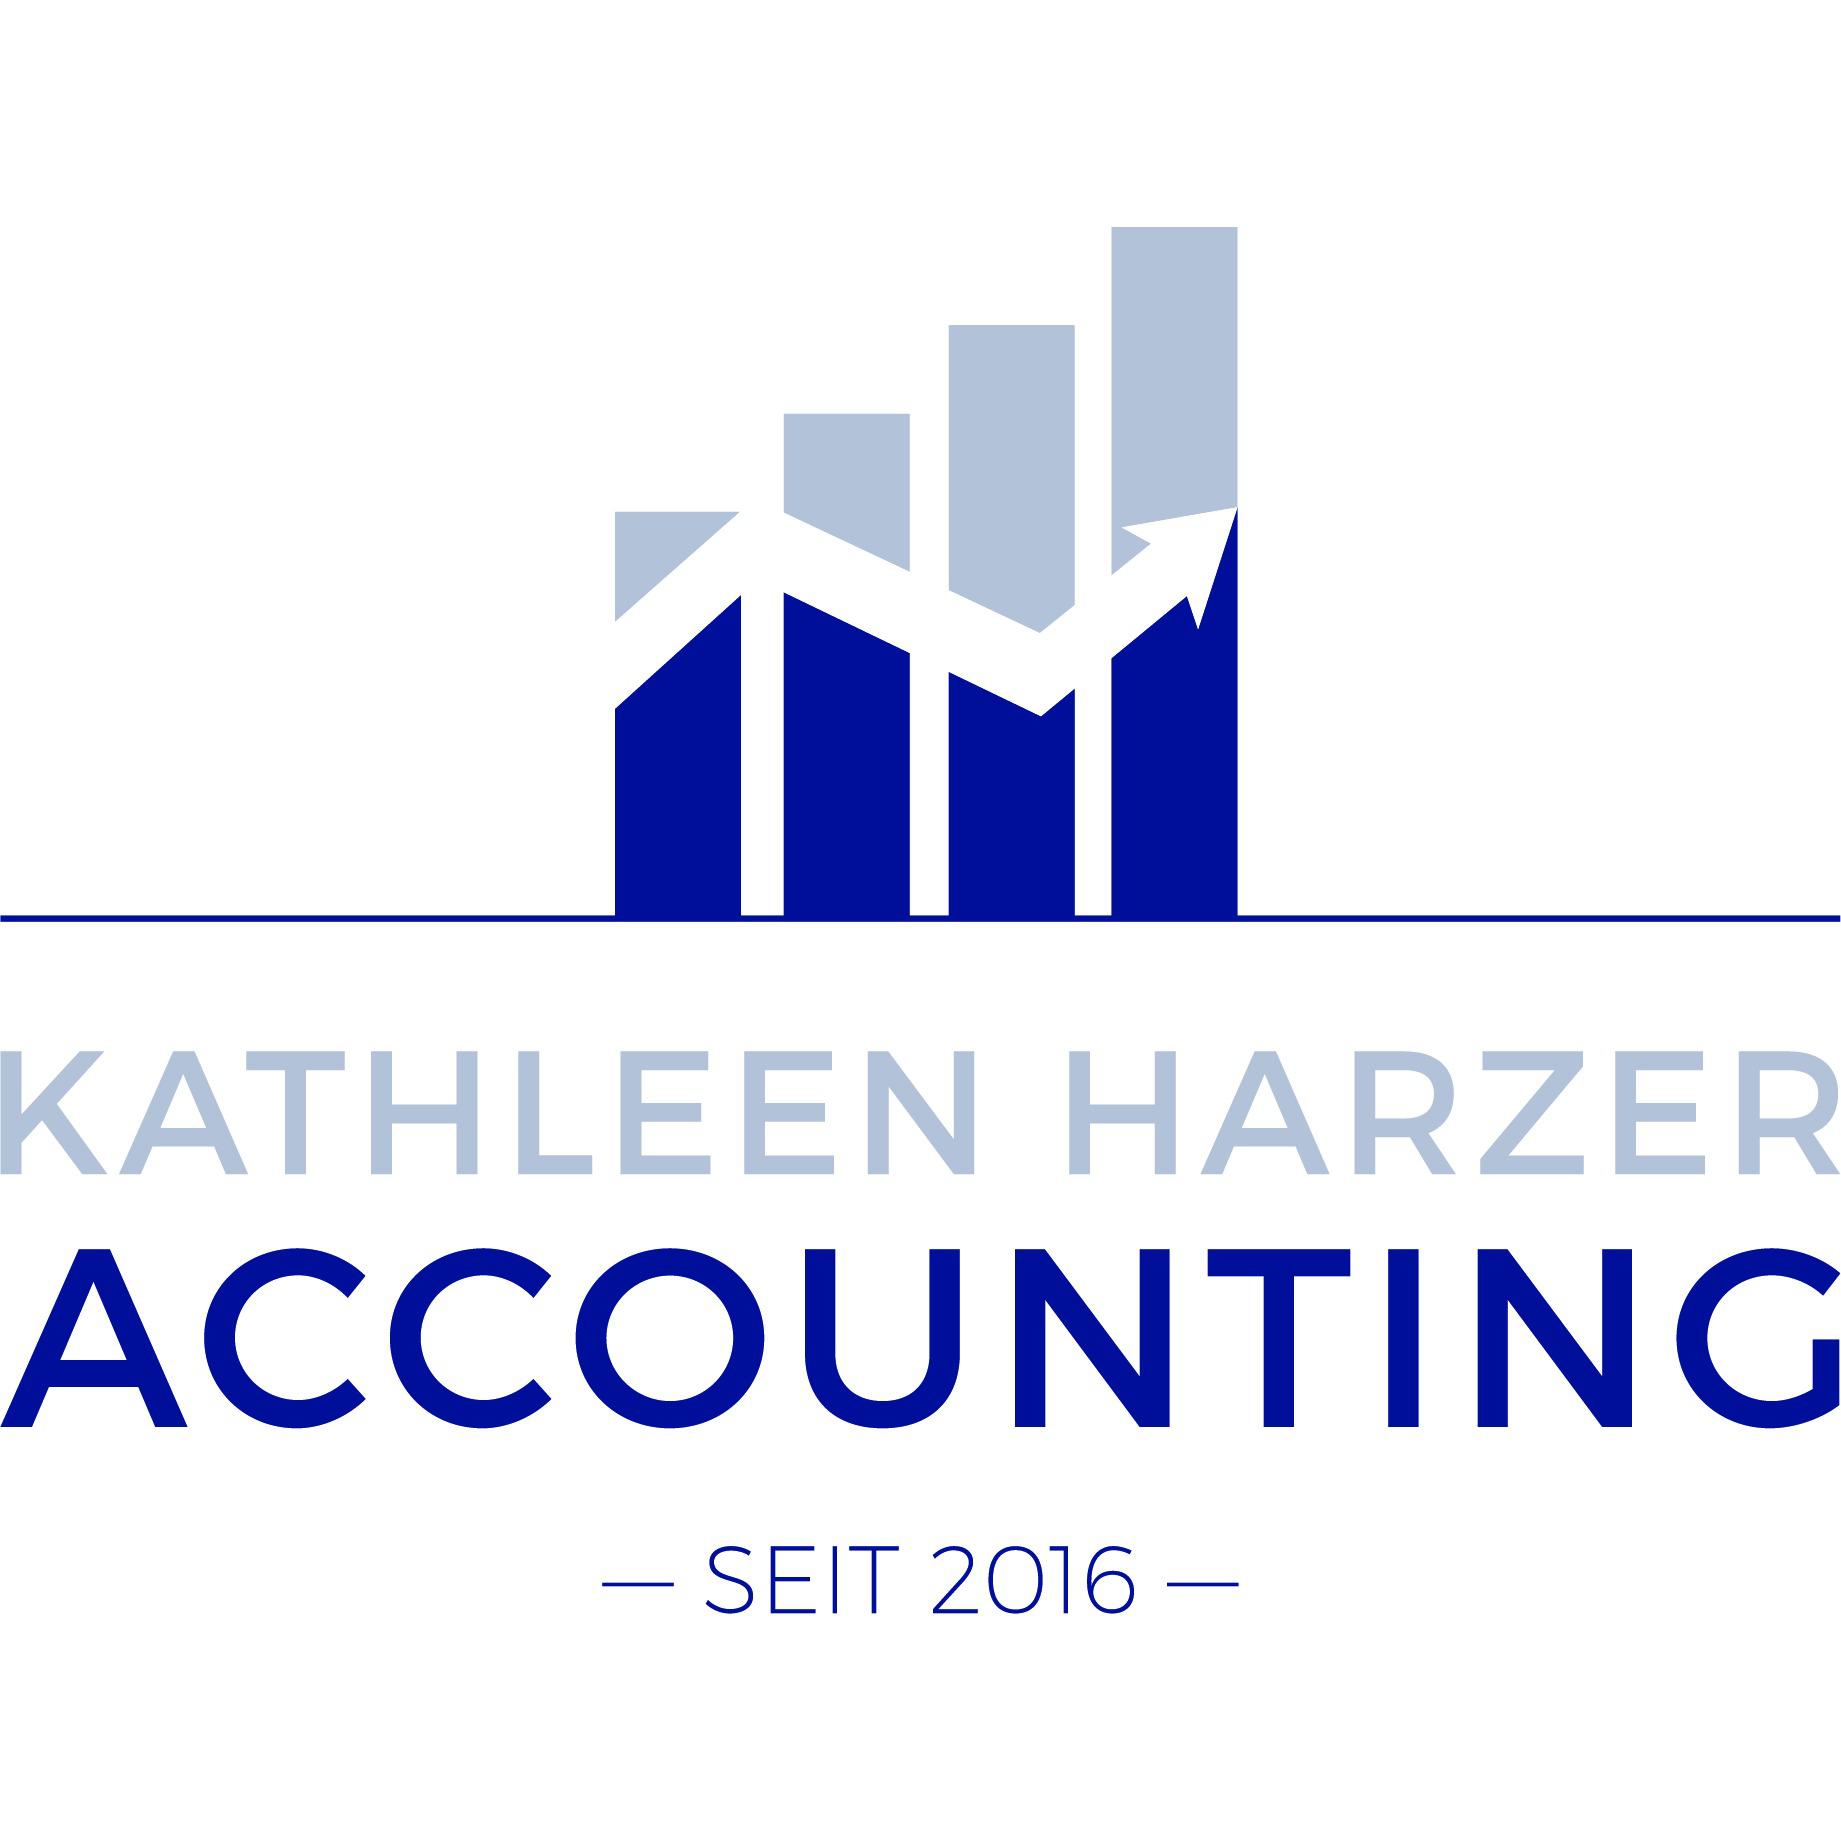 Kathleen Harzer Accounting in Ubstadt Weiher - Logo